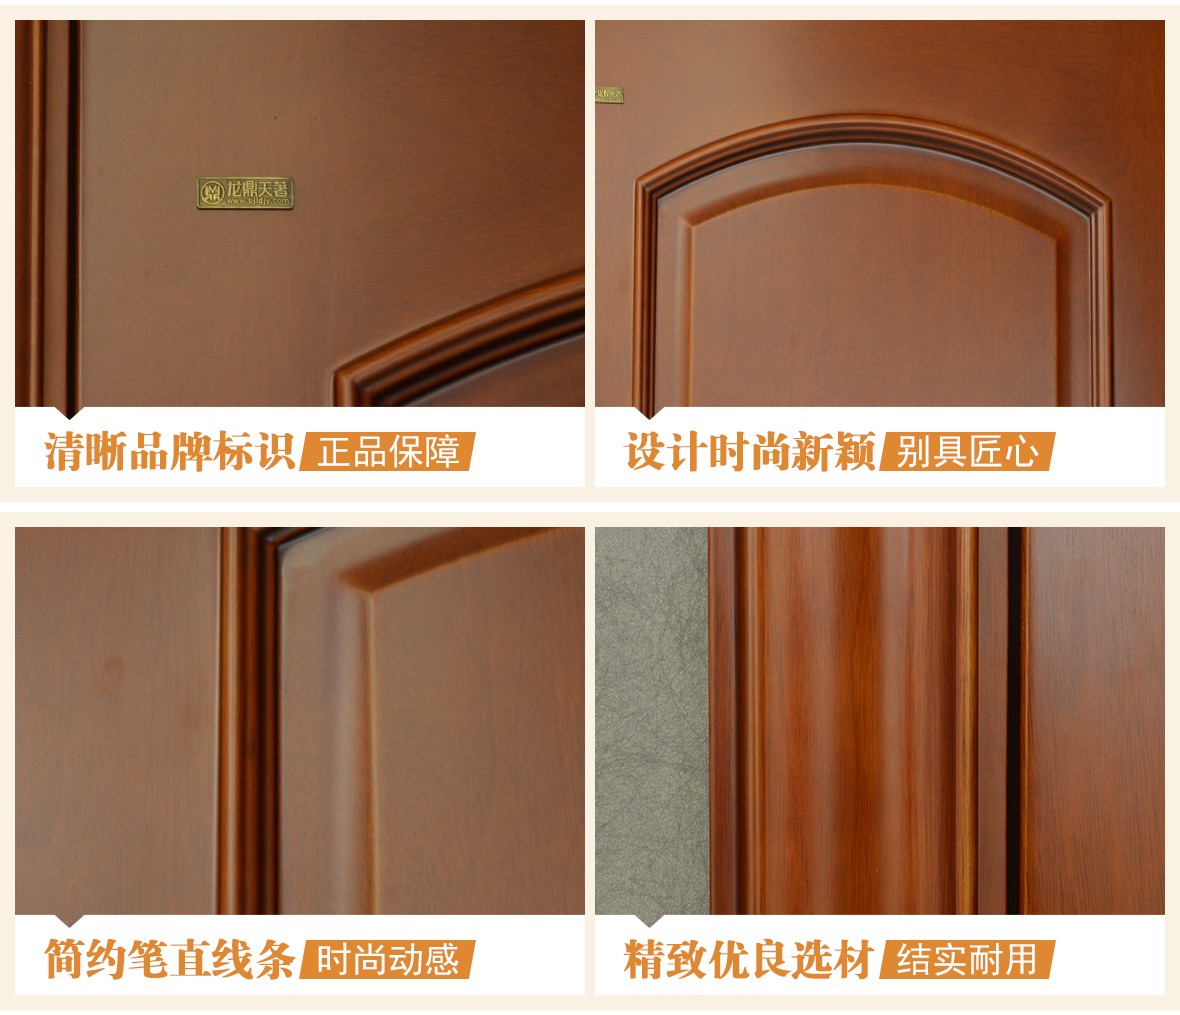 龙鼎天著 LBN-104型号实木复合门 环保材质室内门 木门专属定制 细节